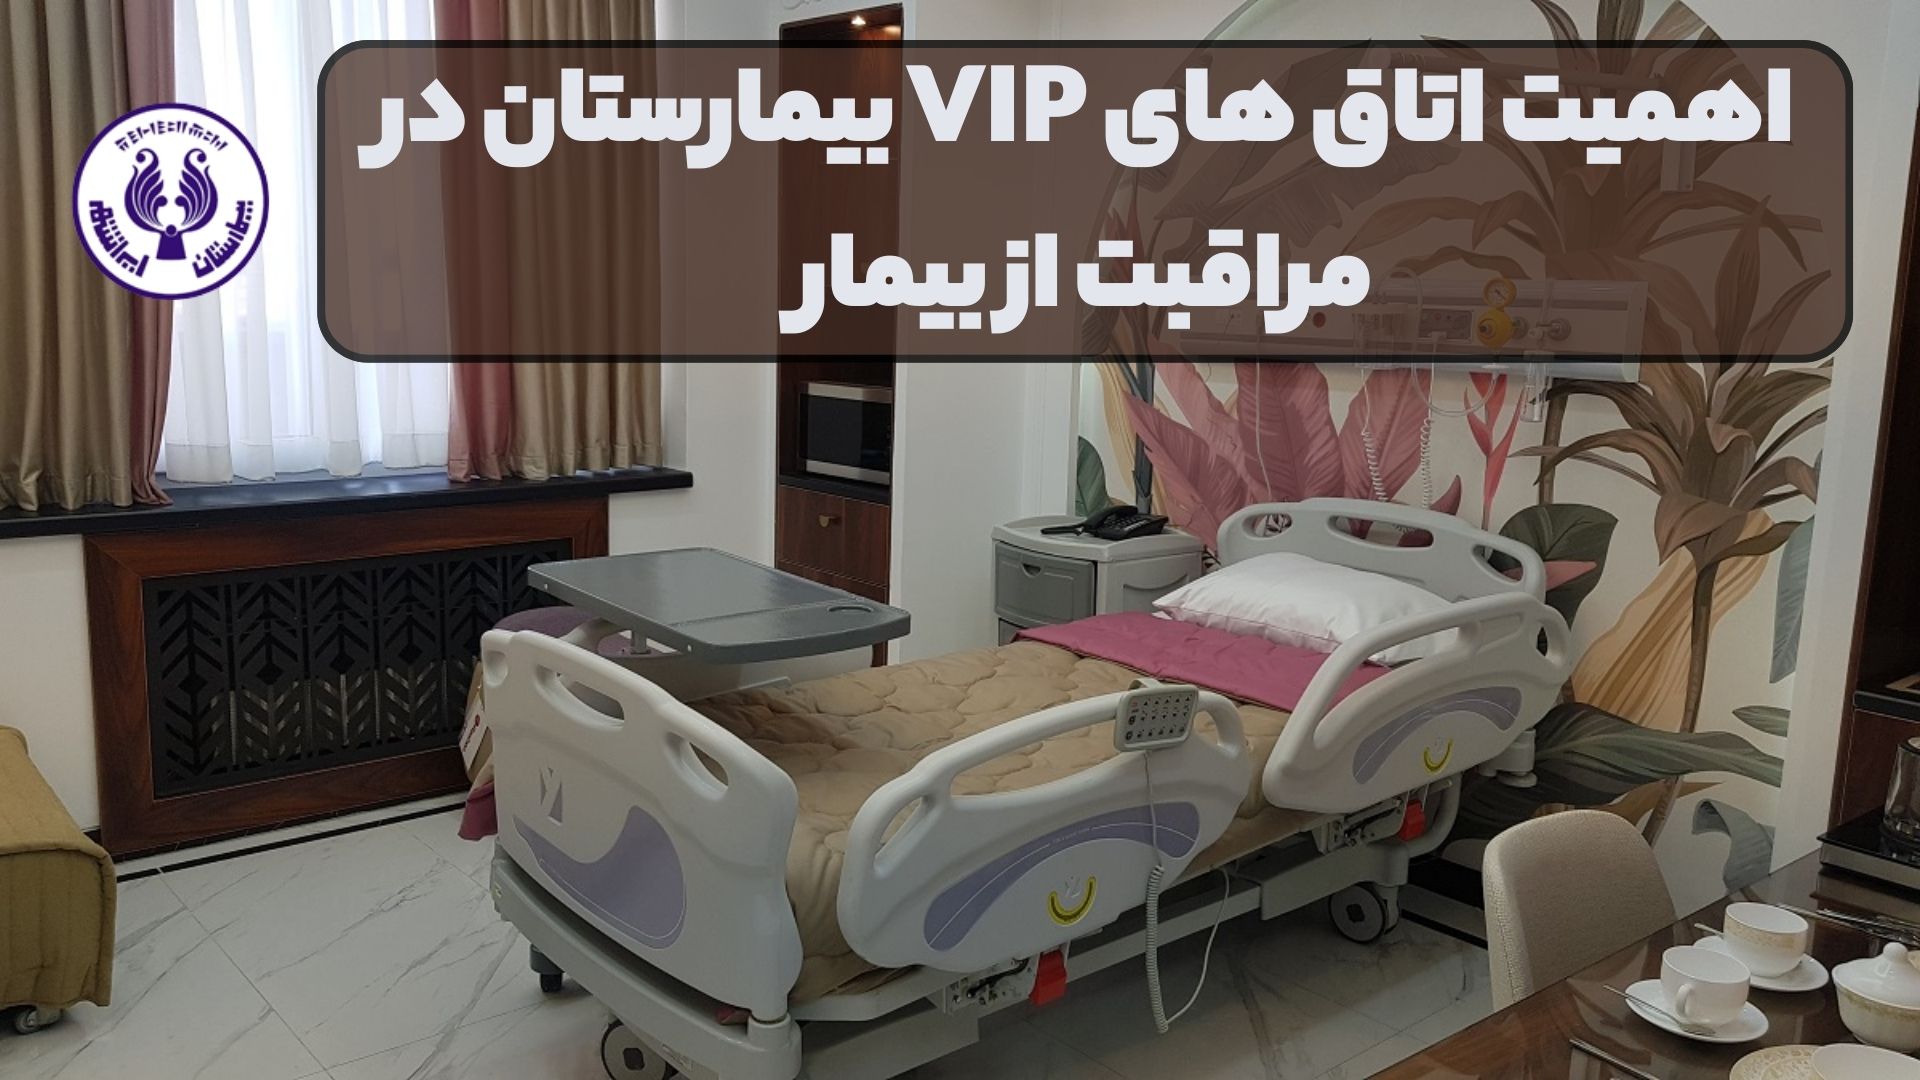 اهمیت اتاق های VIP بیمارستان در مراقبت از بیمار